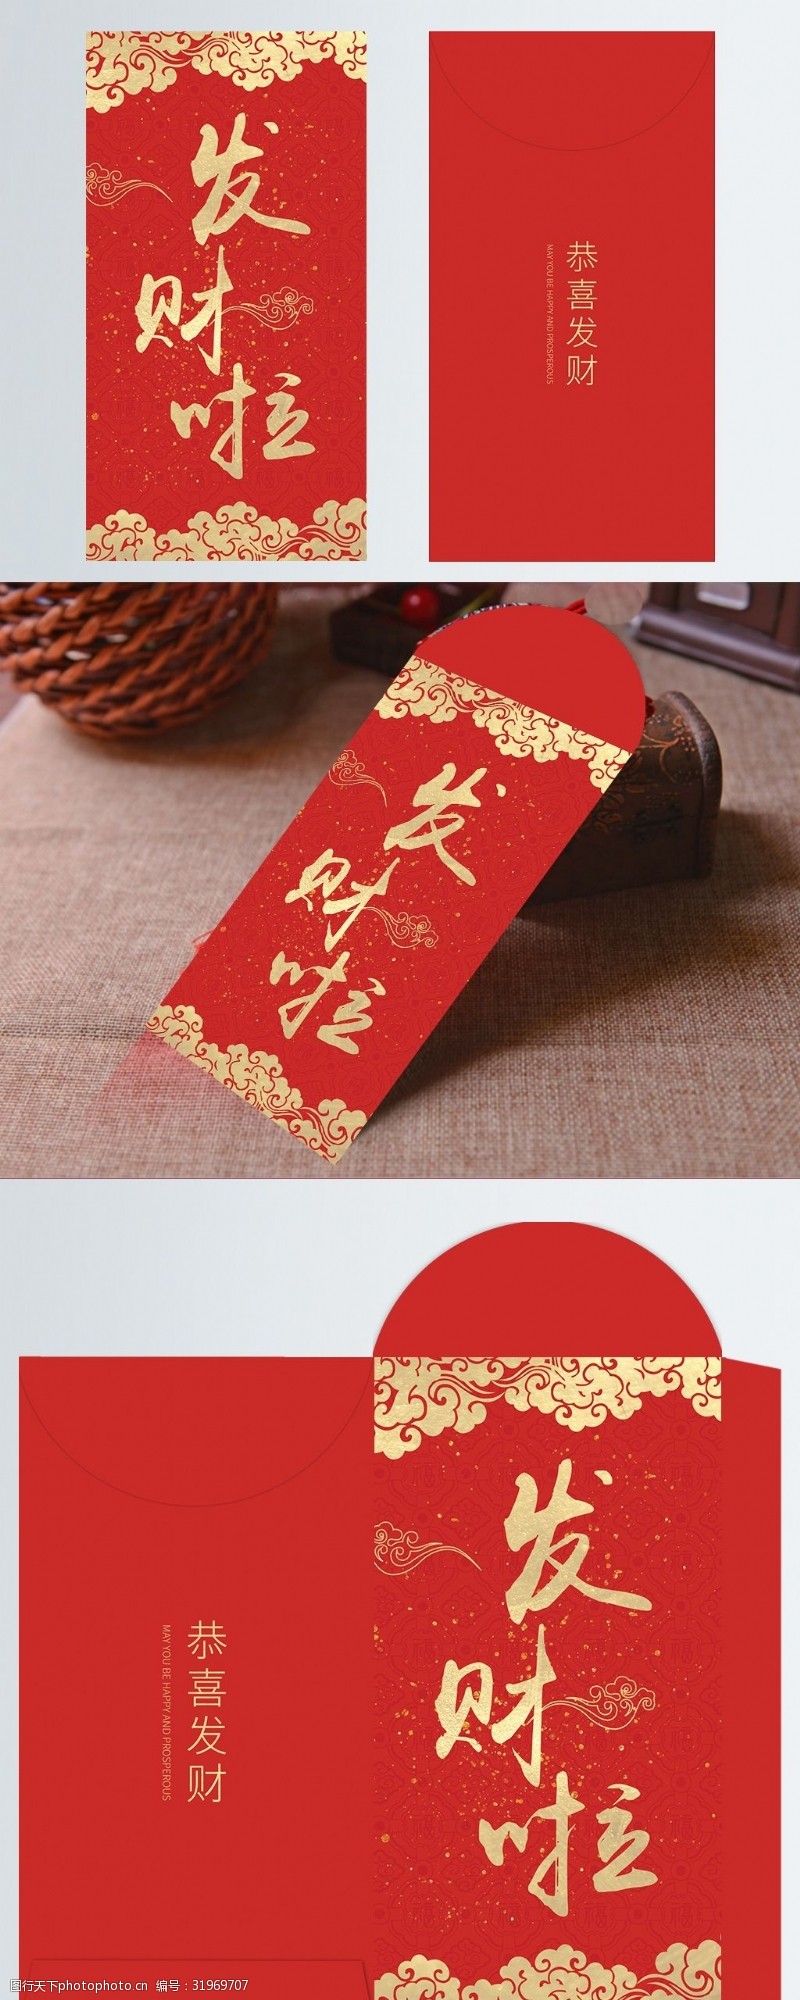 春节发财啦红包包装设计模版